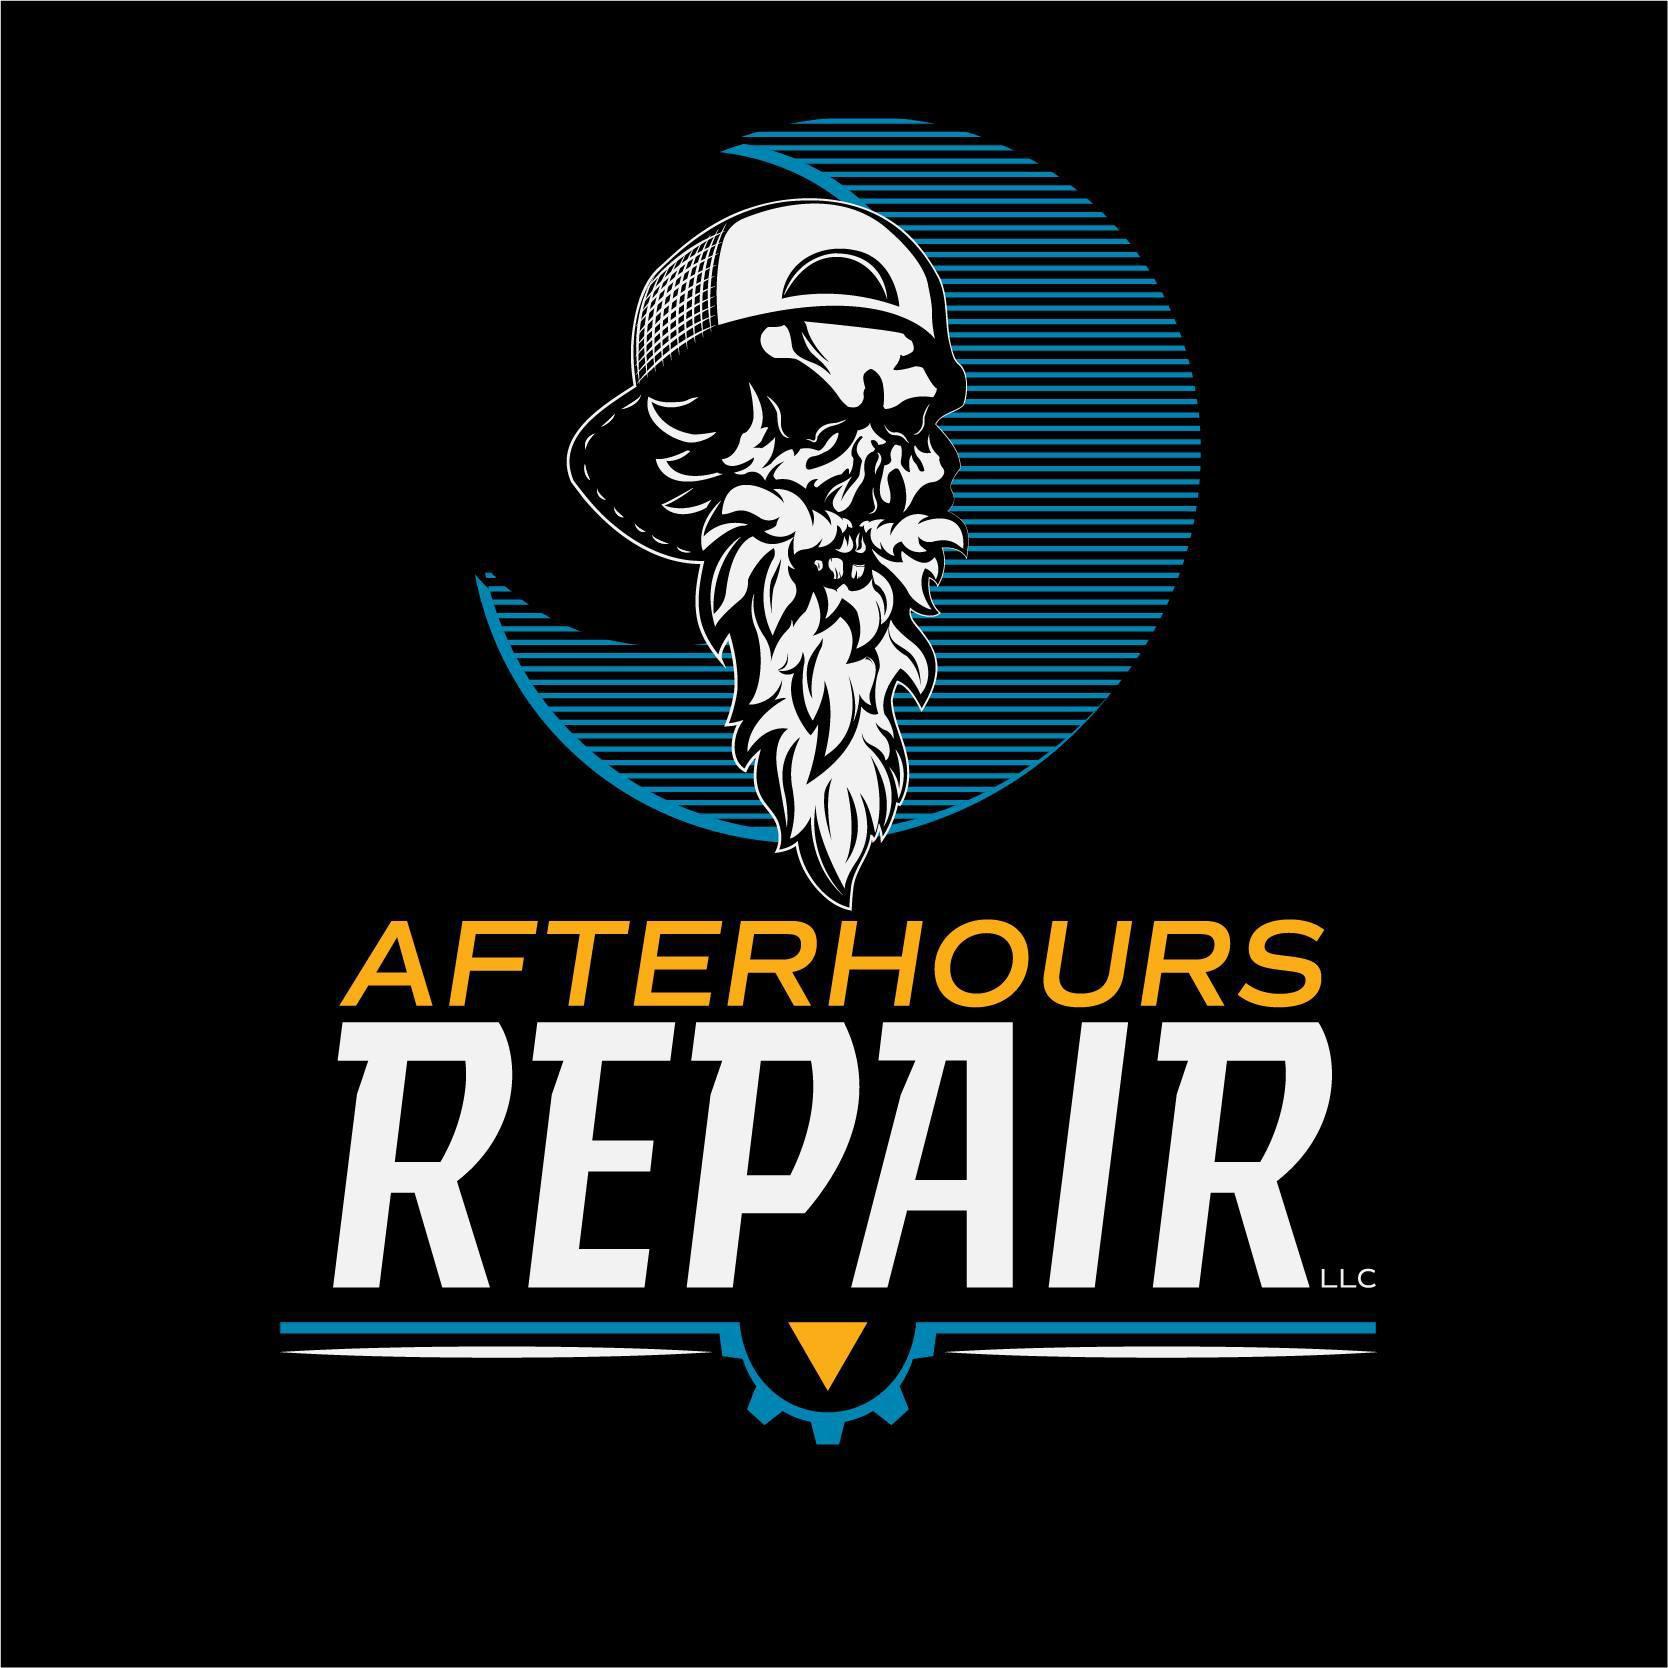 Afterhours Repair LLC